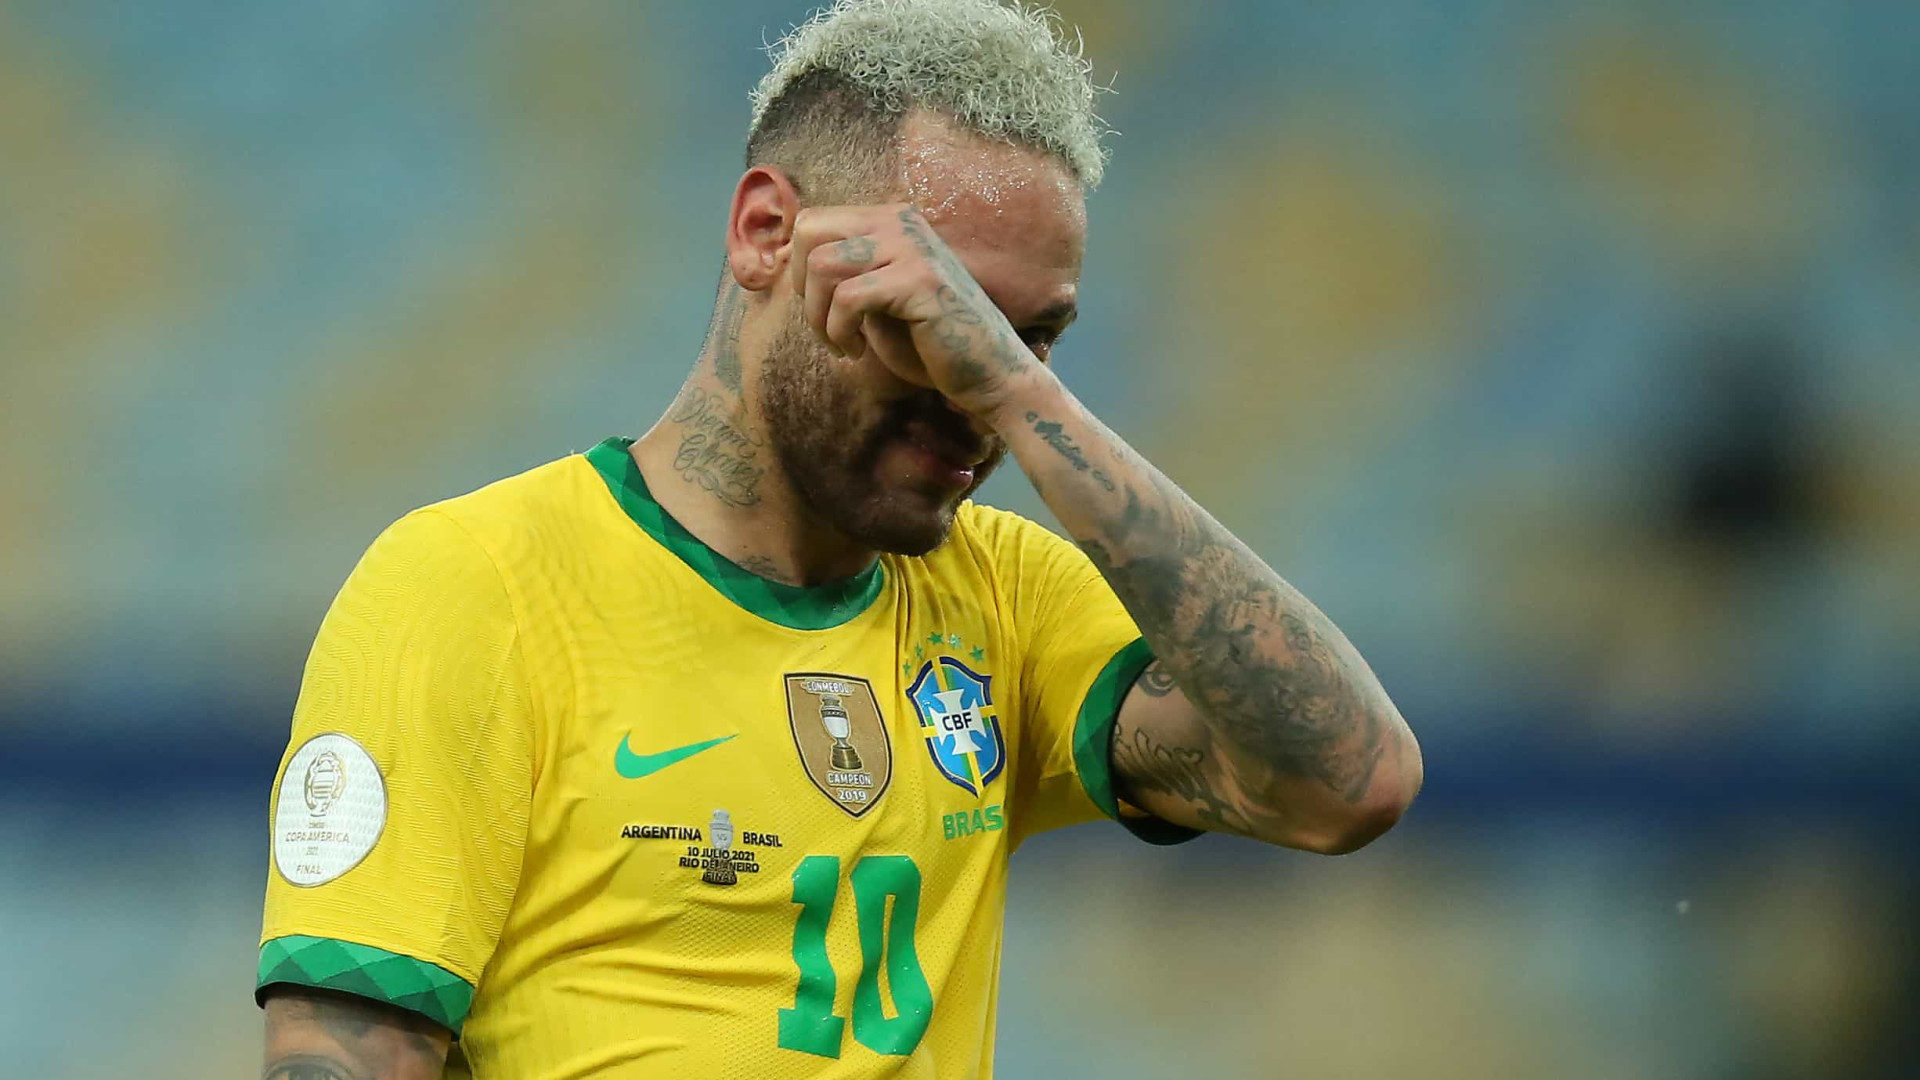 Neymar desabafa após vitória: 'Não sei mais o que faço para me respeitarem'